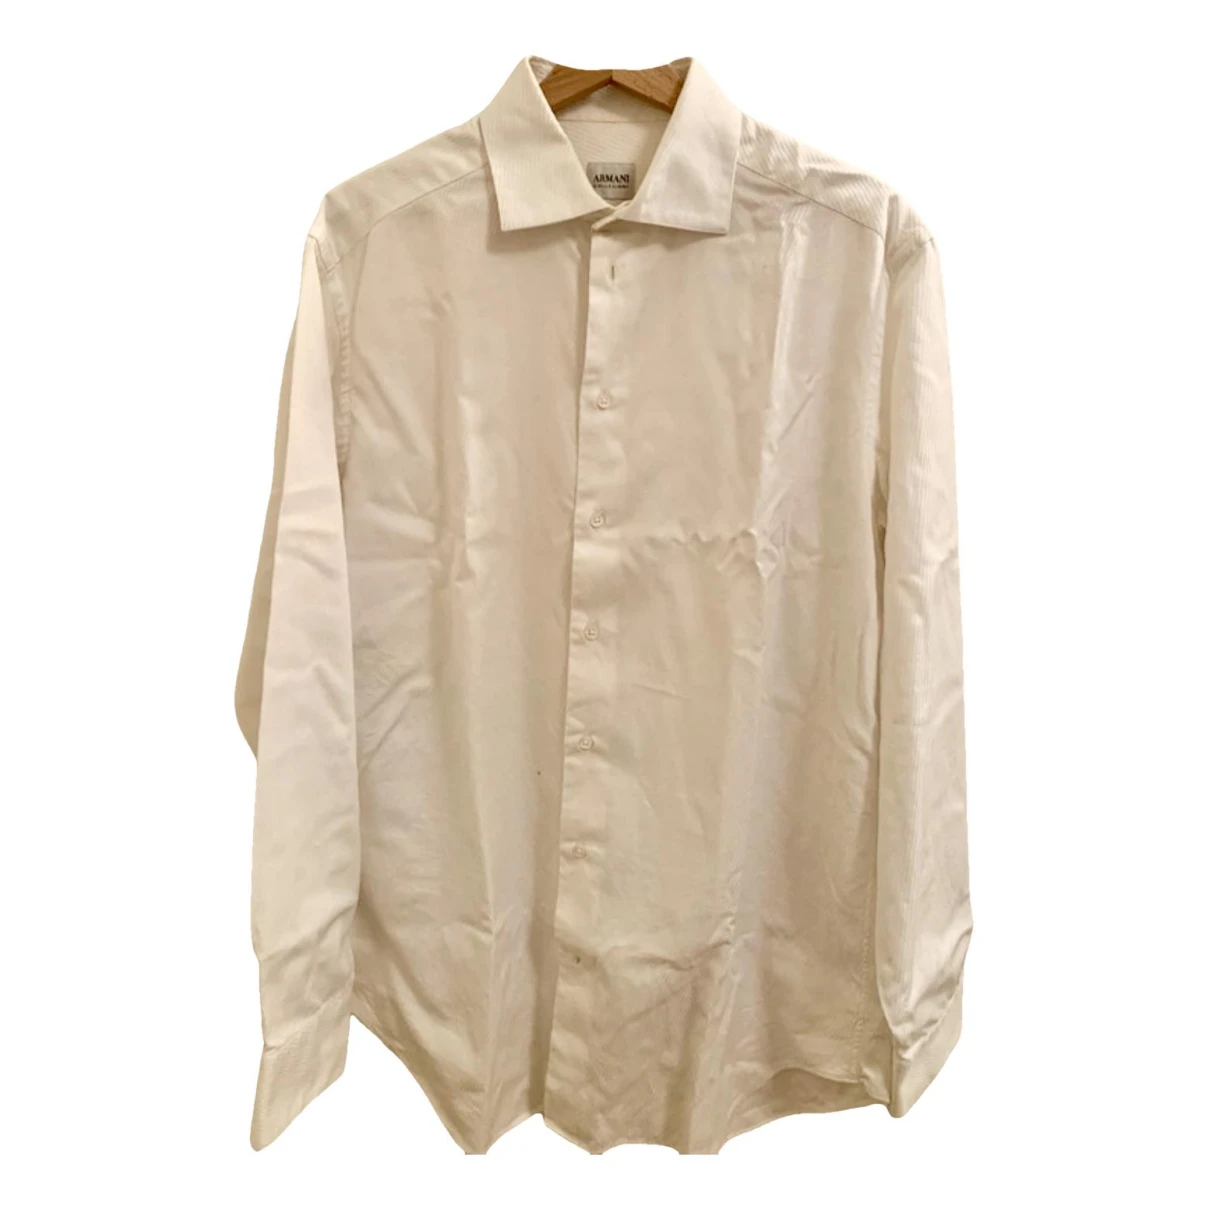 Pre-owned Armani Collezioni Shirt In White